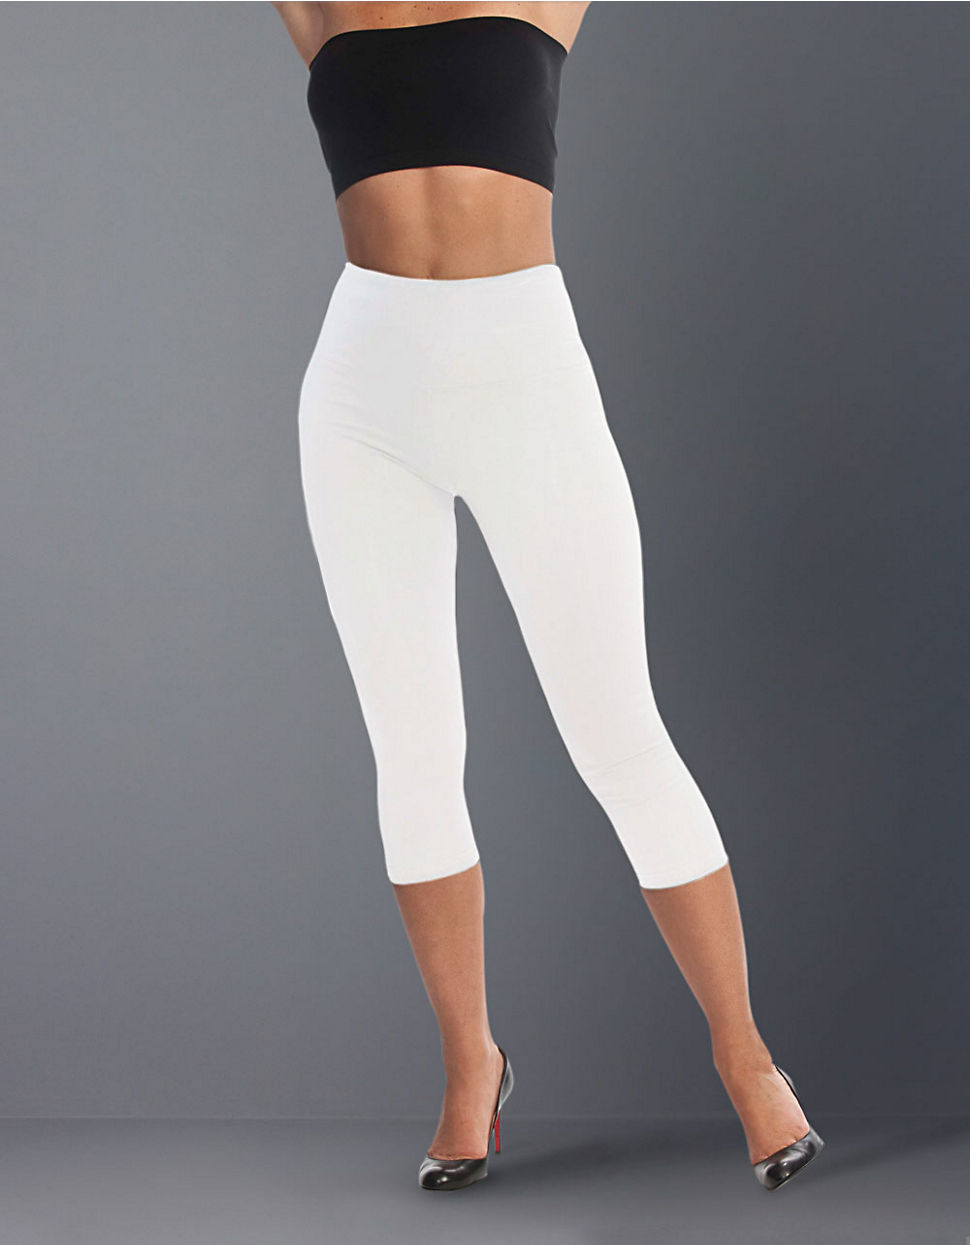 how to wear white capri leggings